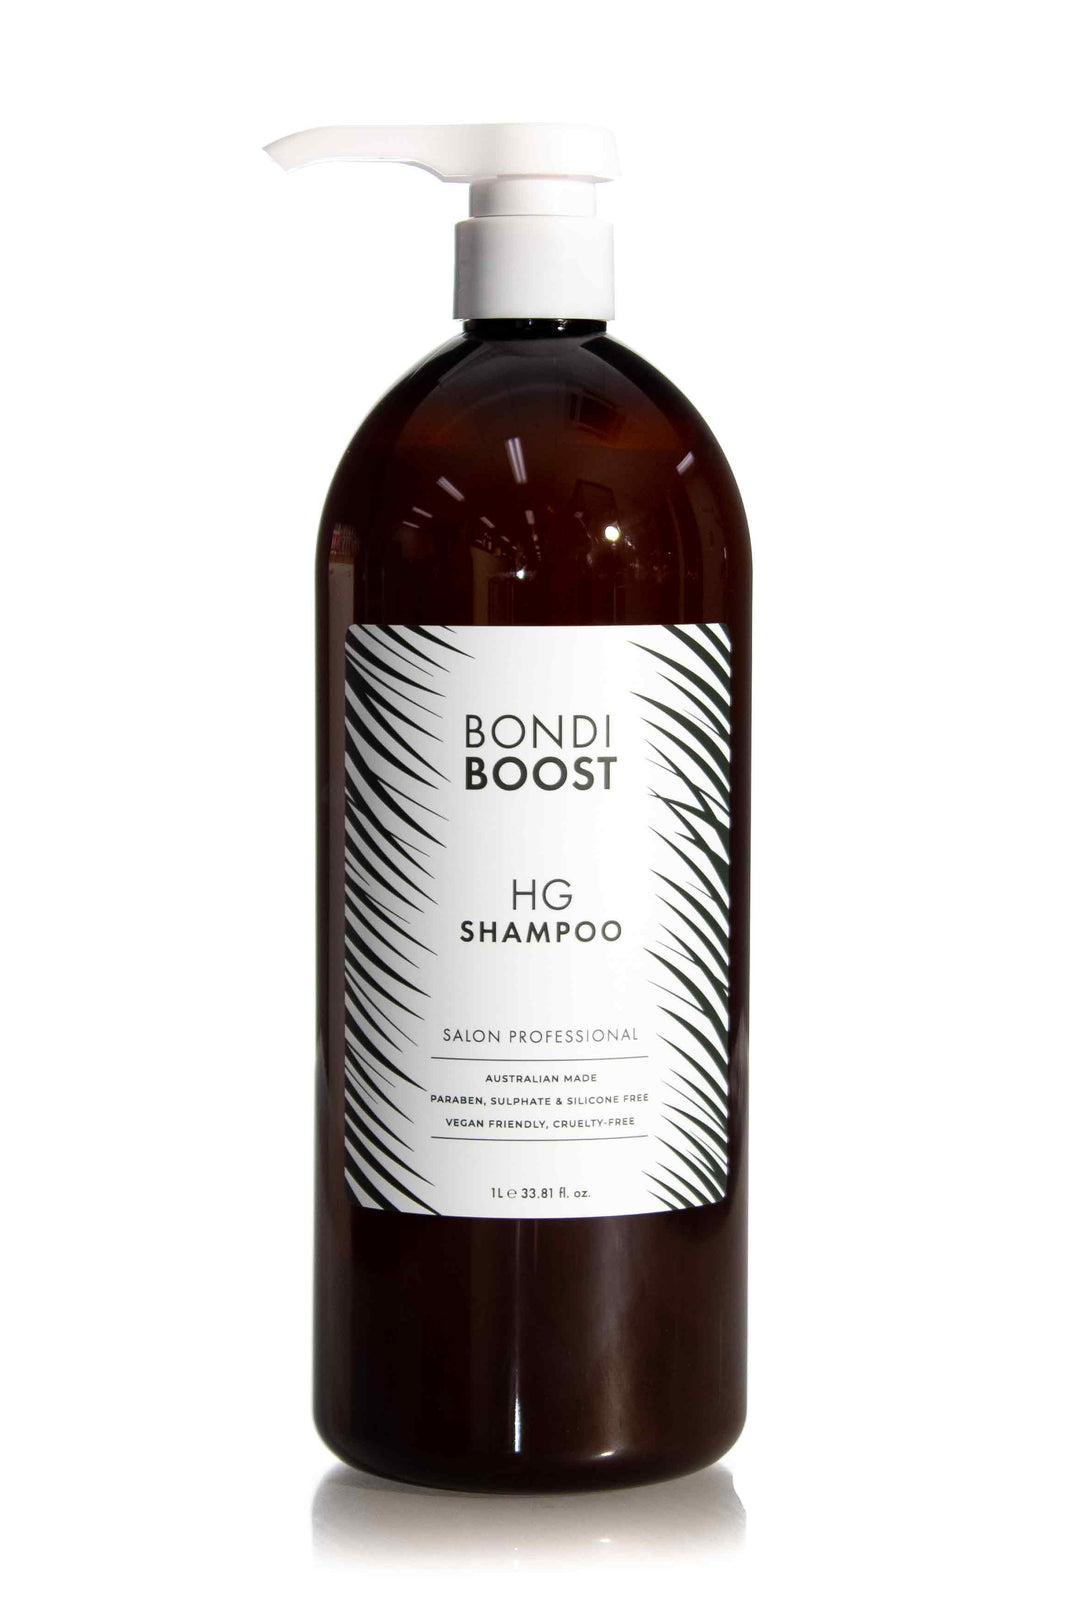 Bondi Boost HG Shampoo